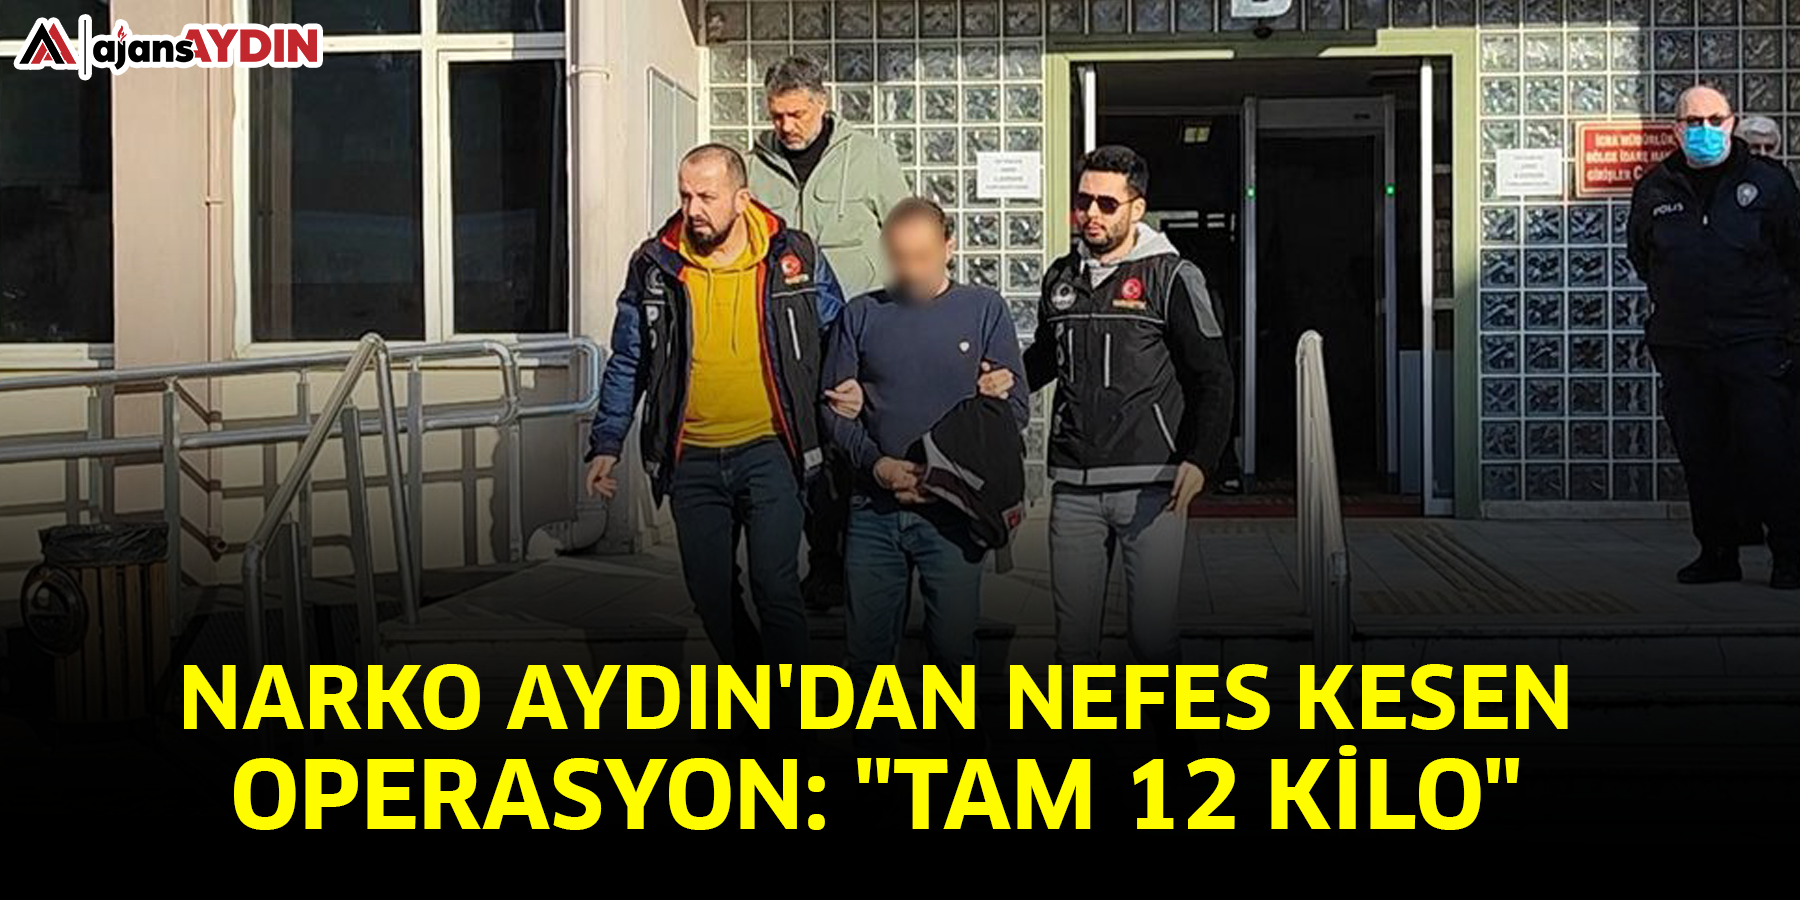 Narko Aydın'dan nefes kesen operasyon: "Tam 12 kilo"